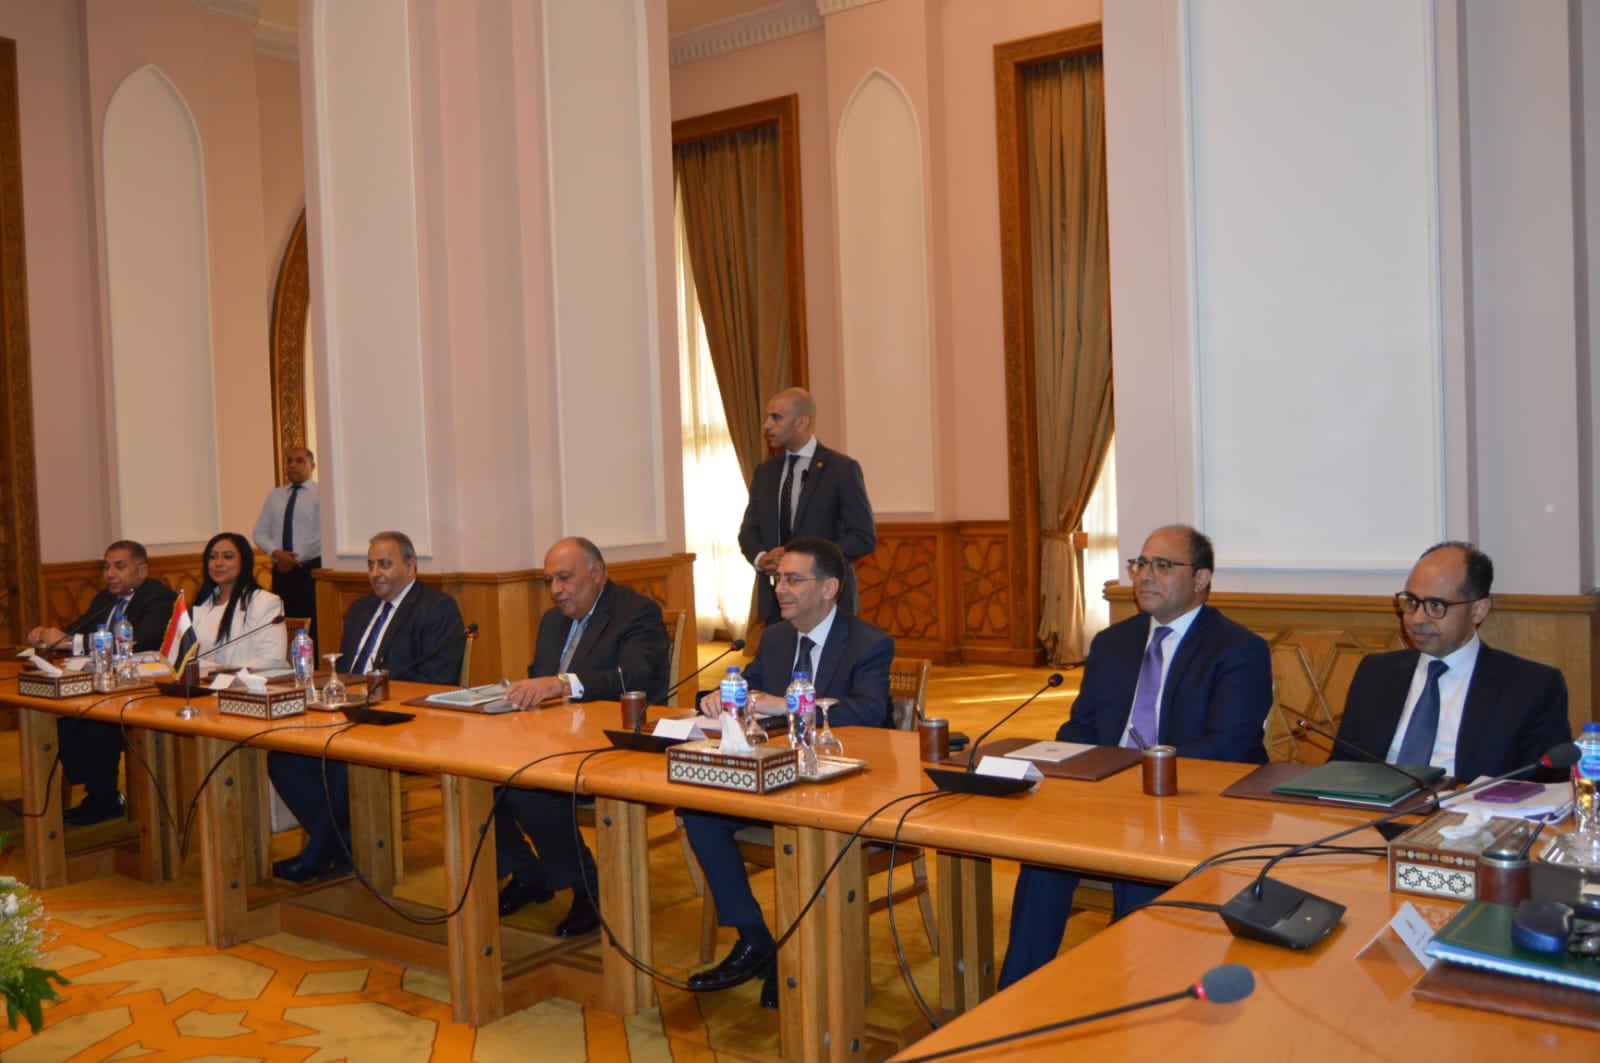 جلسة مباحثات موسعة بين مصر والاتحاد الأوروبي برئاسة شكرى وبورييل